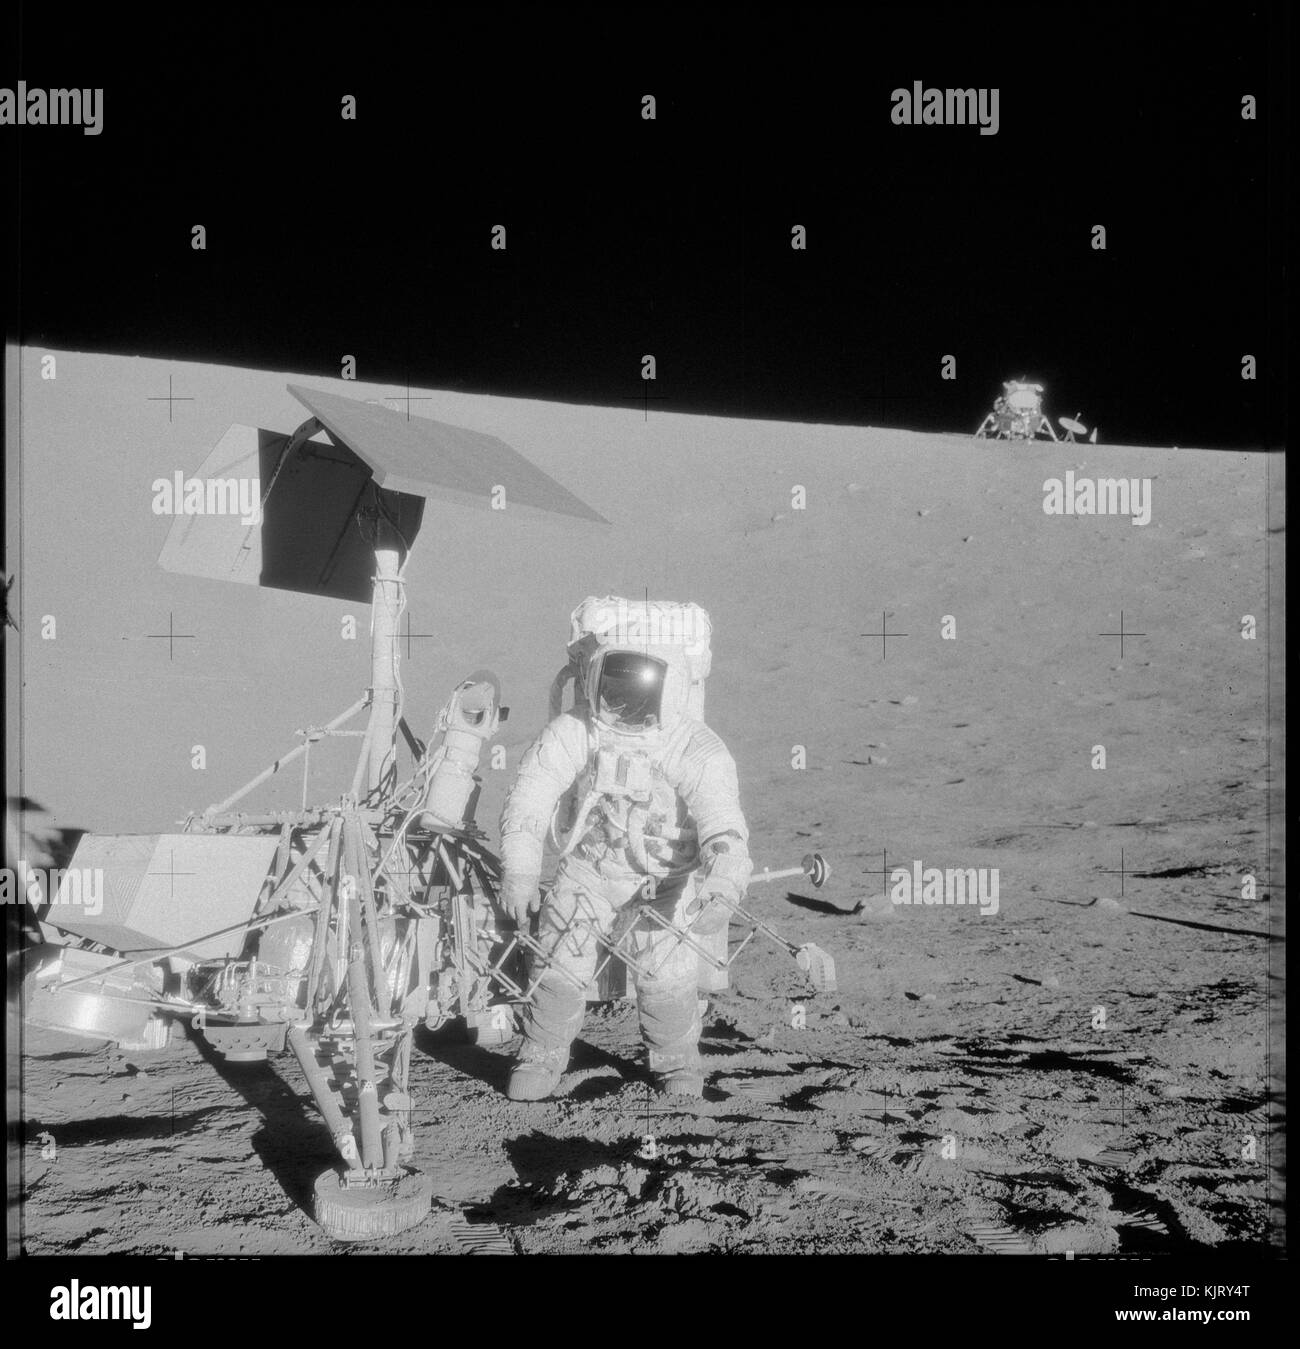 La Nasa apollo 12 atterraggio lunare missione il primo equipaggio astronauta charles conrad jr. esamina la unmanned surveyor 3 veicolo spaziale durante la sua seconda attività extravehicular spacewalk sulla superficie lunare novembre 20, 1969 in orbita intorno alla terra. (Foto di alan l. bean via planetpix) Foto Stock